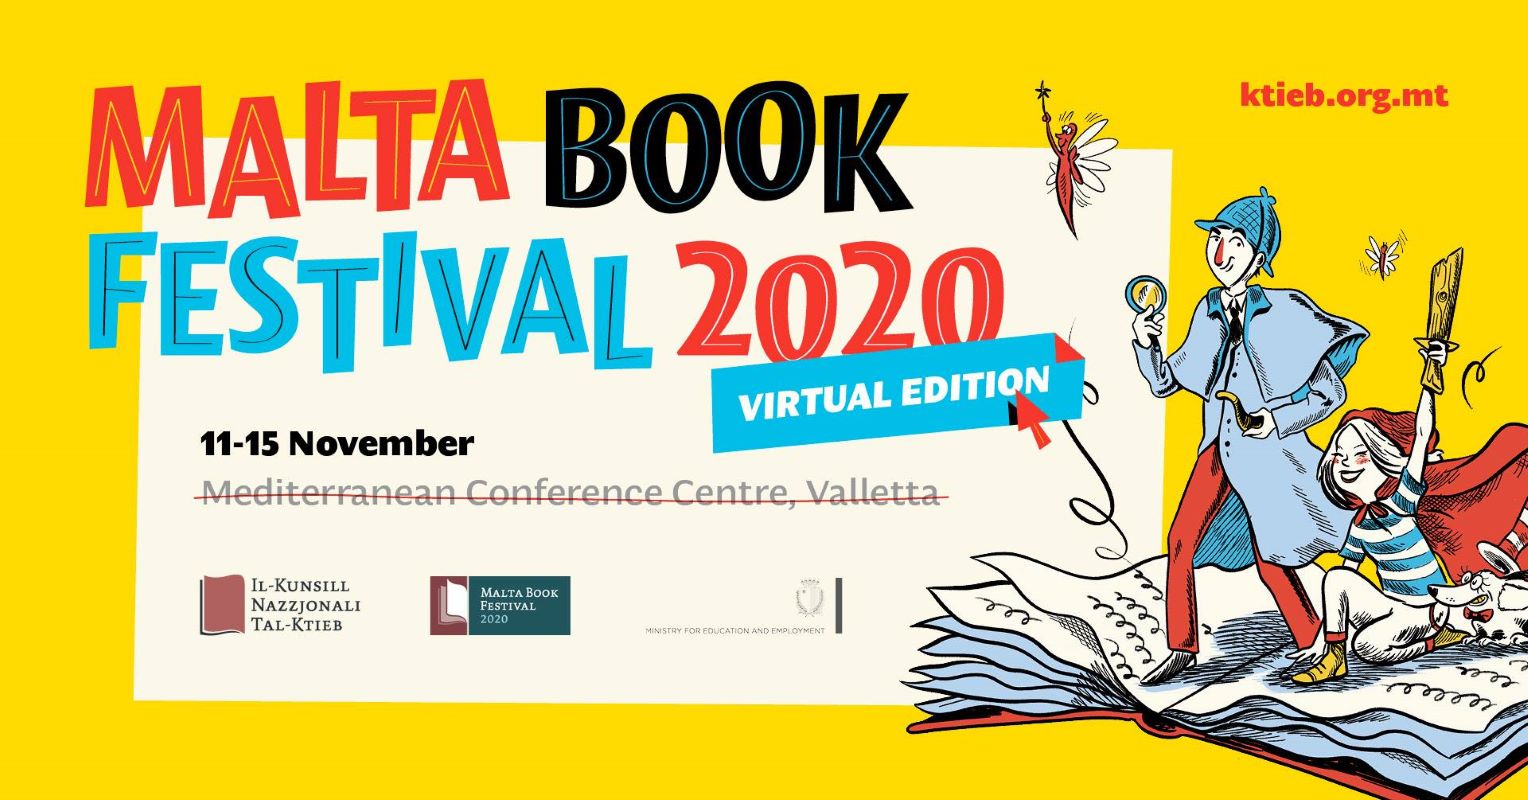 Malta Book Festival 2020 locandina